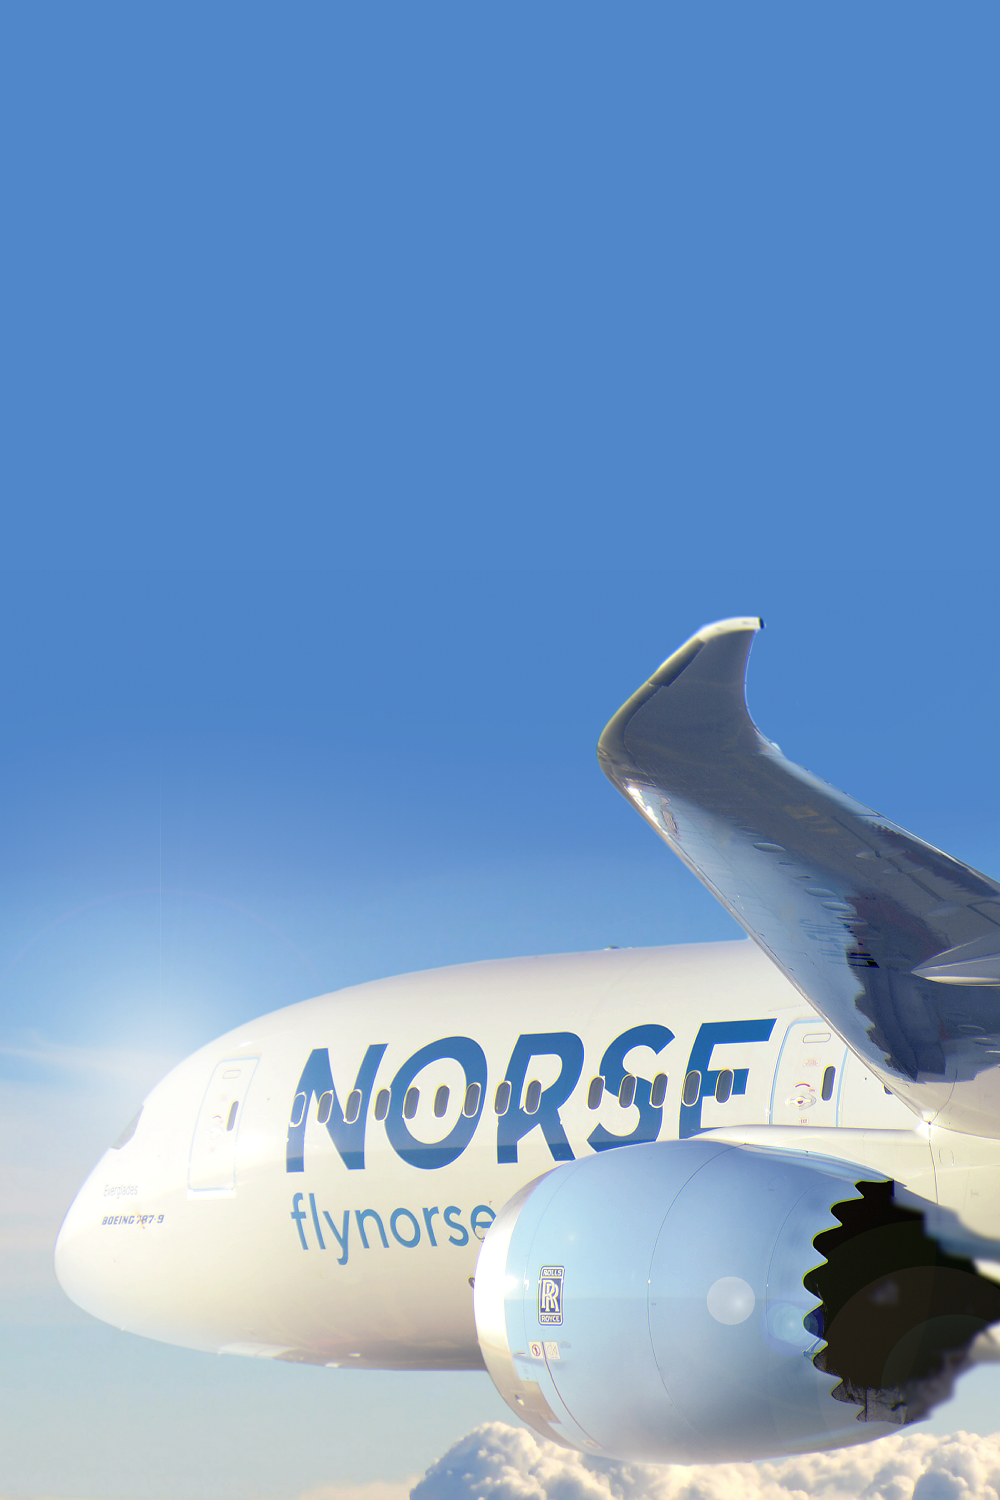 Norse Flugzeug vor Wolken und Himmer (c) Norse